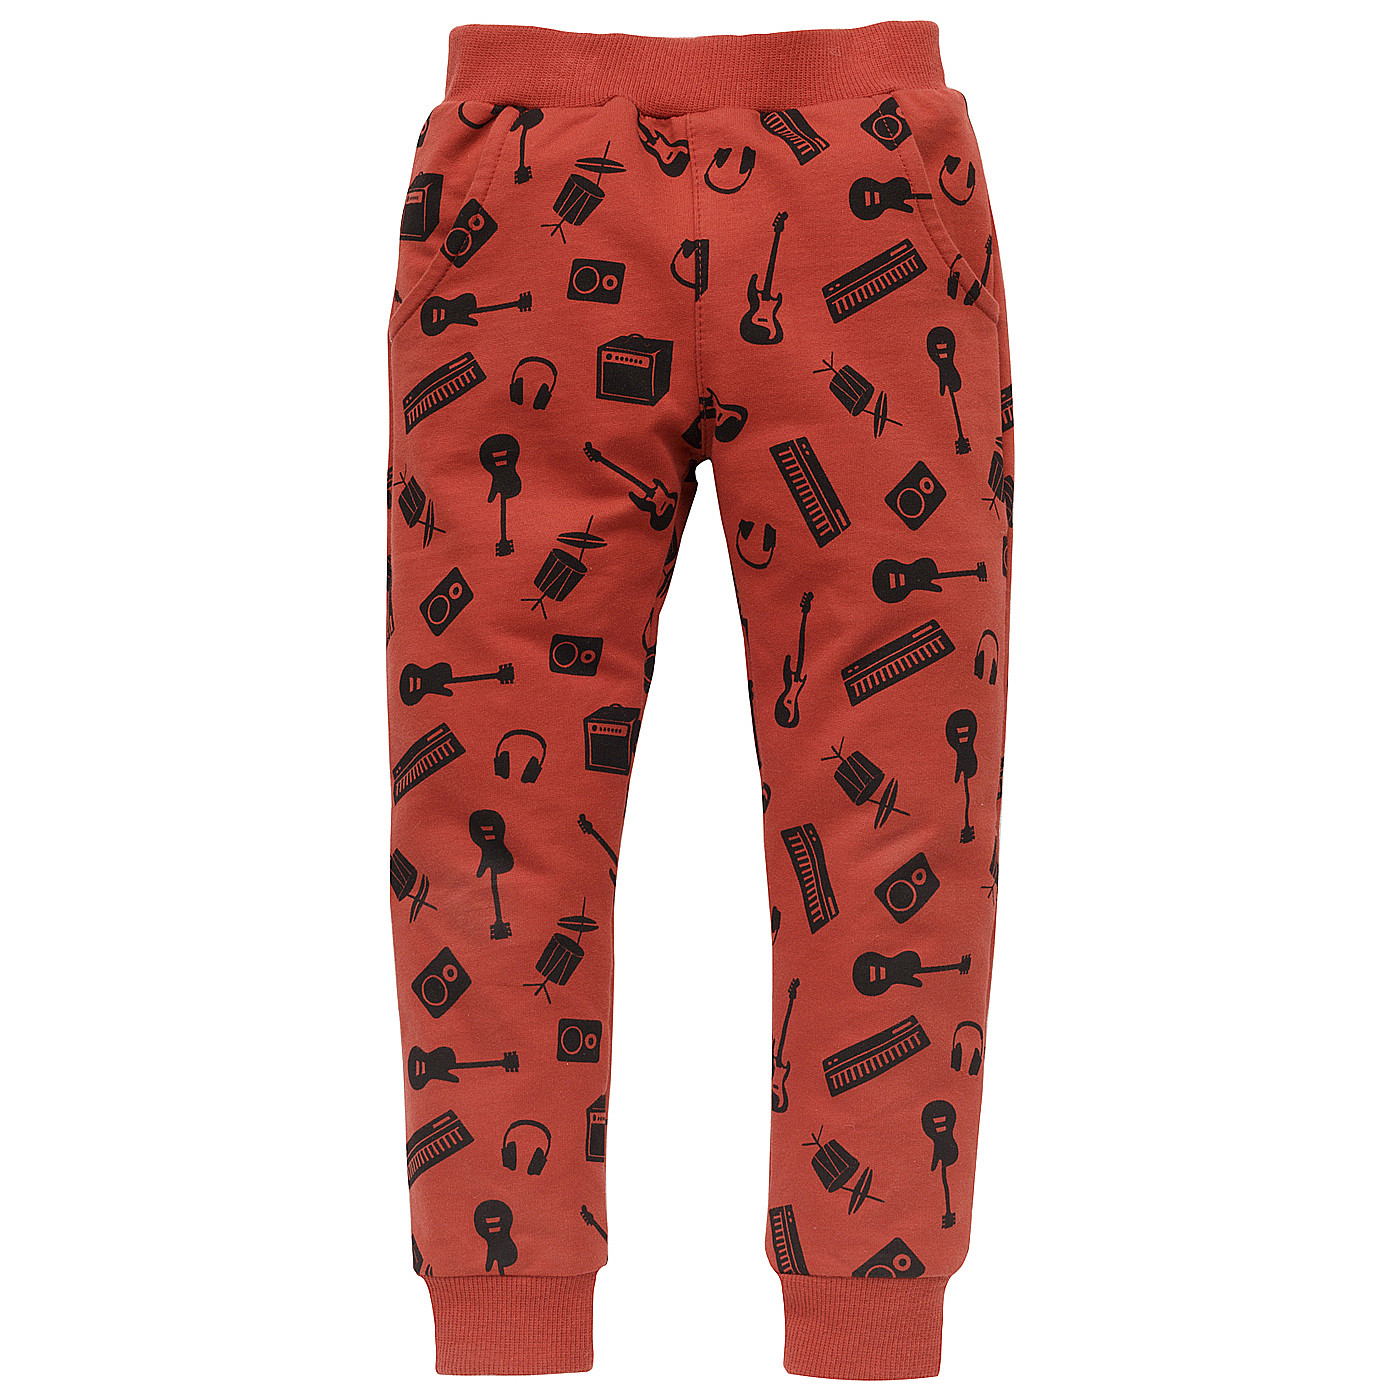 Pinokio Let's Rock Pants Red (Červené kalhoty) 122